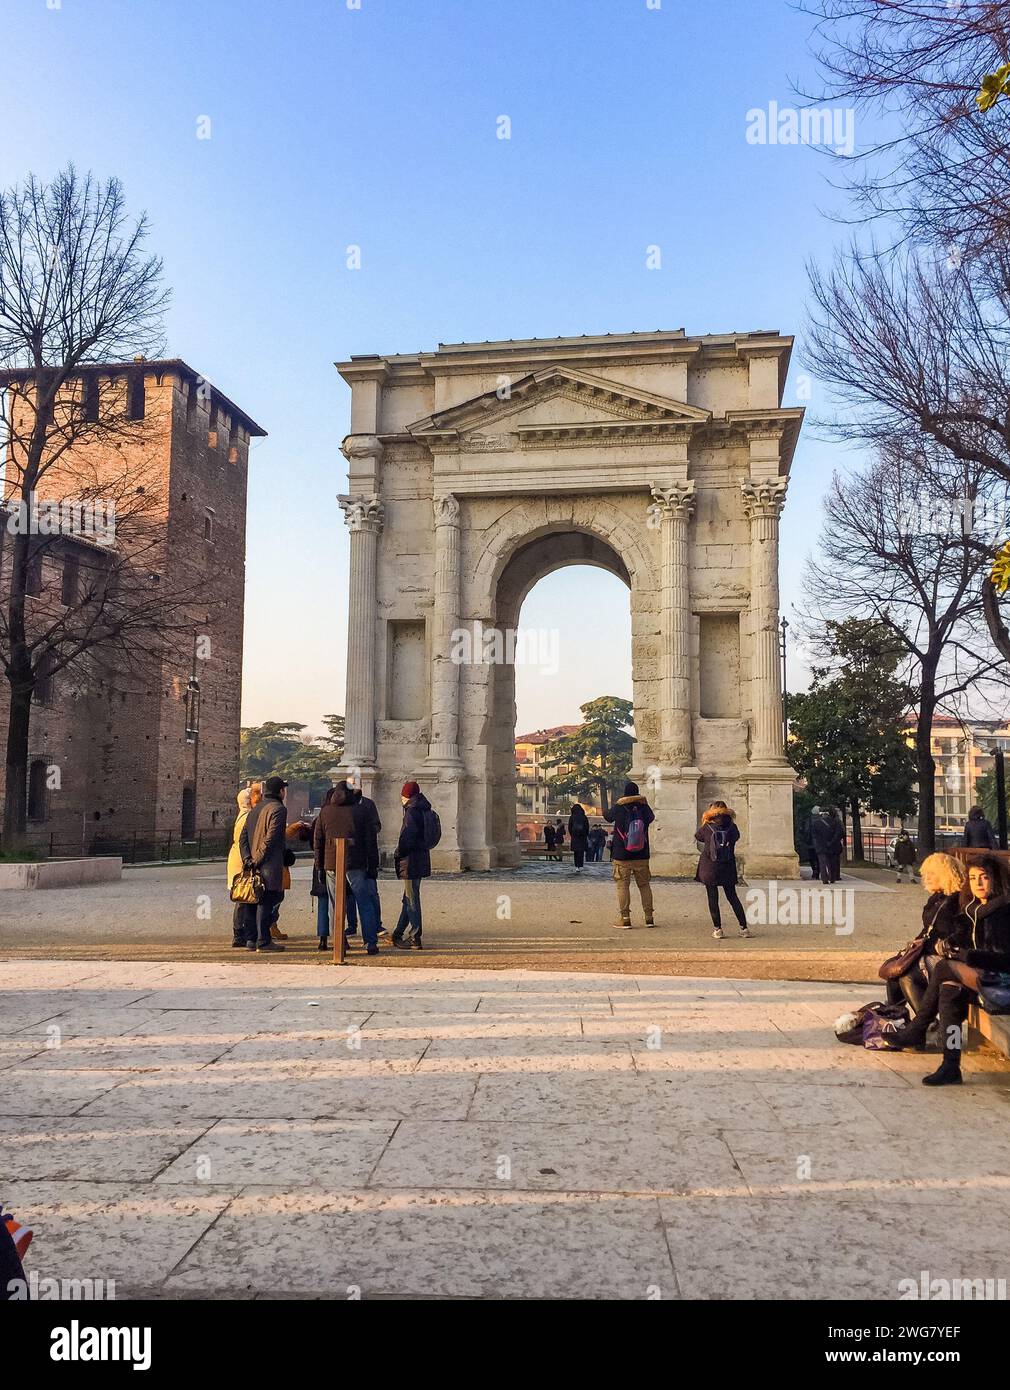 Vérone- Italie- 30 décembre 2019 : Arco dei Gavi célèbre monument historique. Arch. Banque D'Images